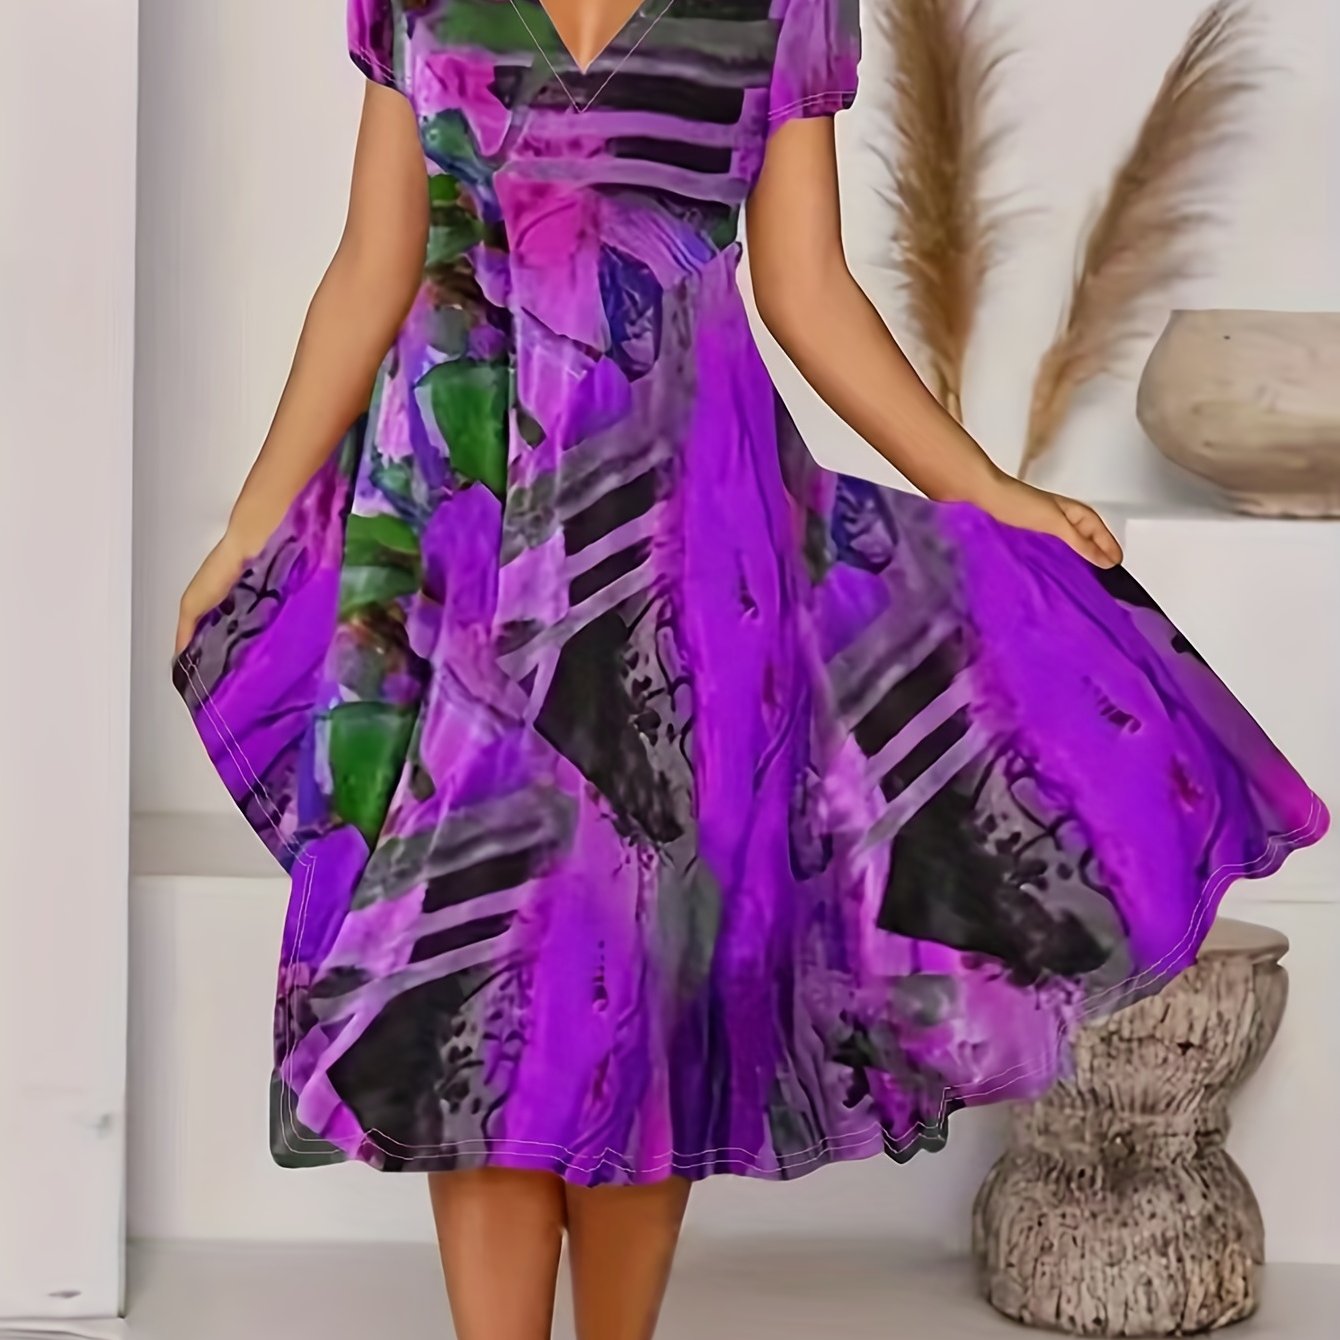 「lovevop」Short Sleeve V Neck Dress, Bohemian Casual Dress For Summer & Spring, Women's Clothing